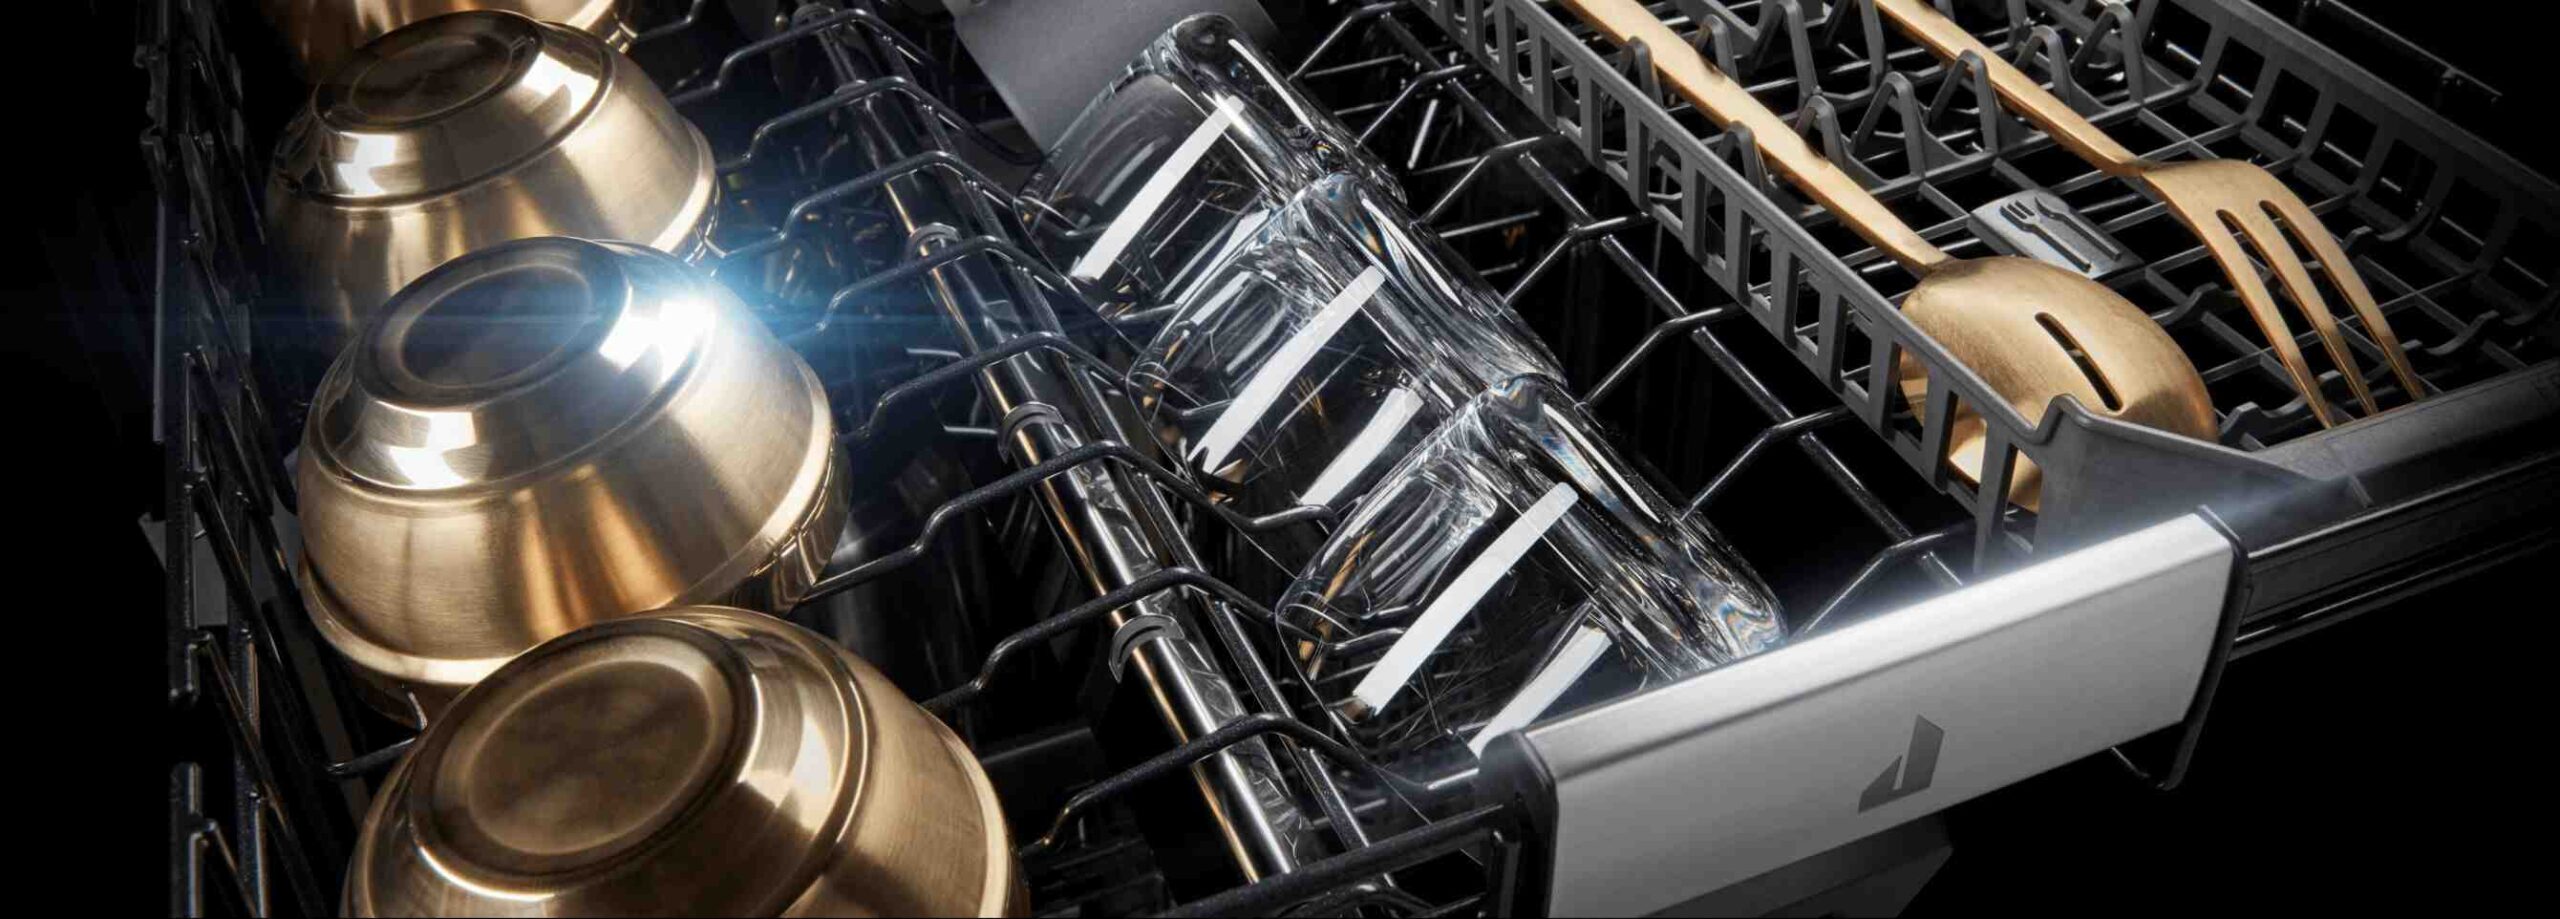 Quelle est la différence entre un Lave-vaisselle encastrable et intégrale ?